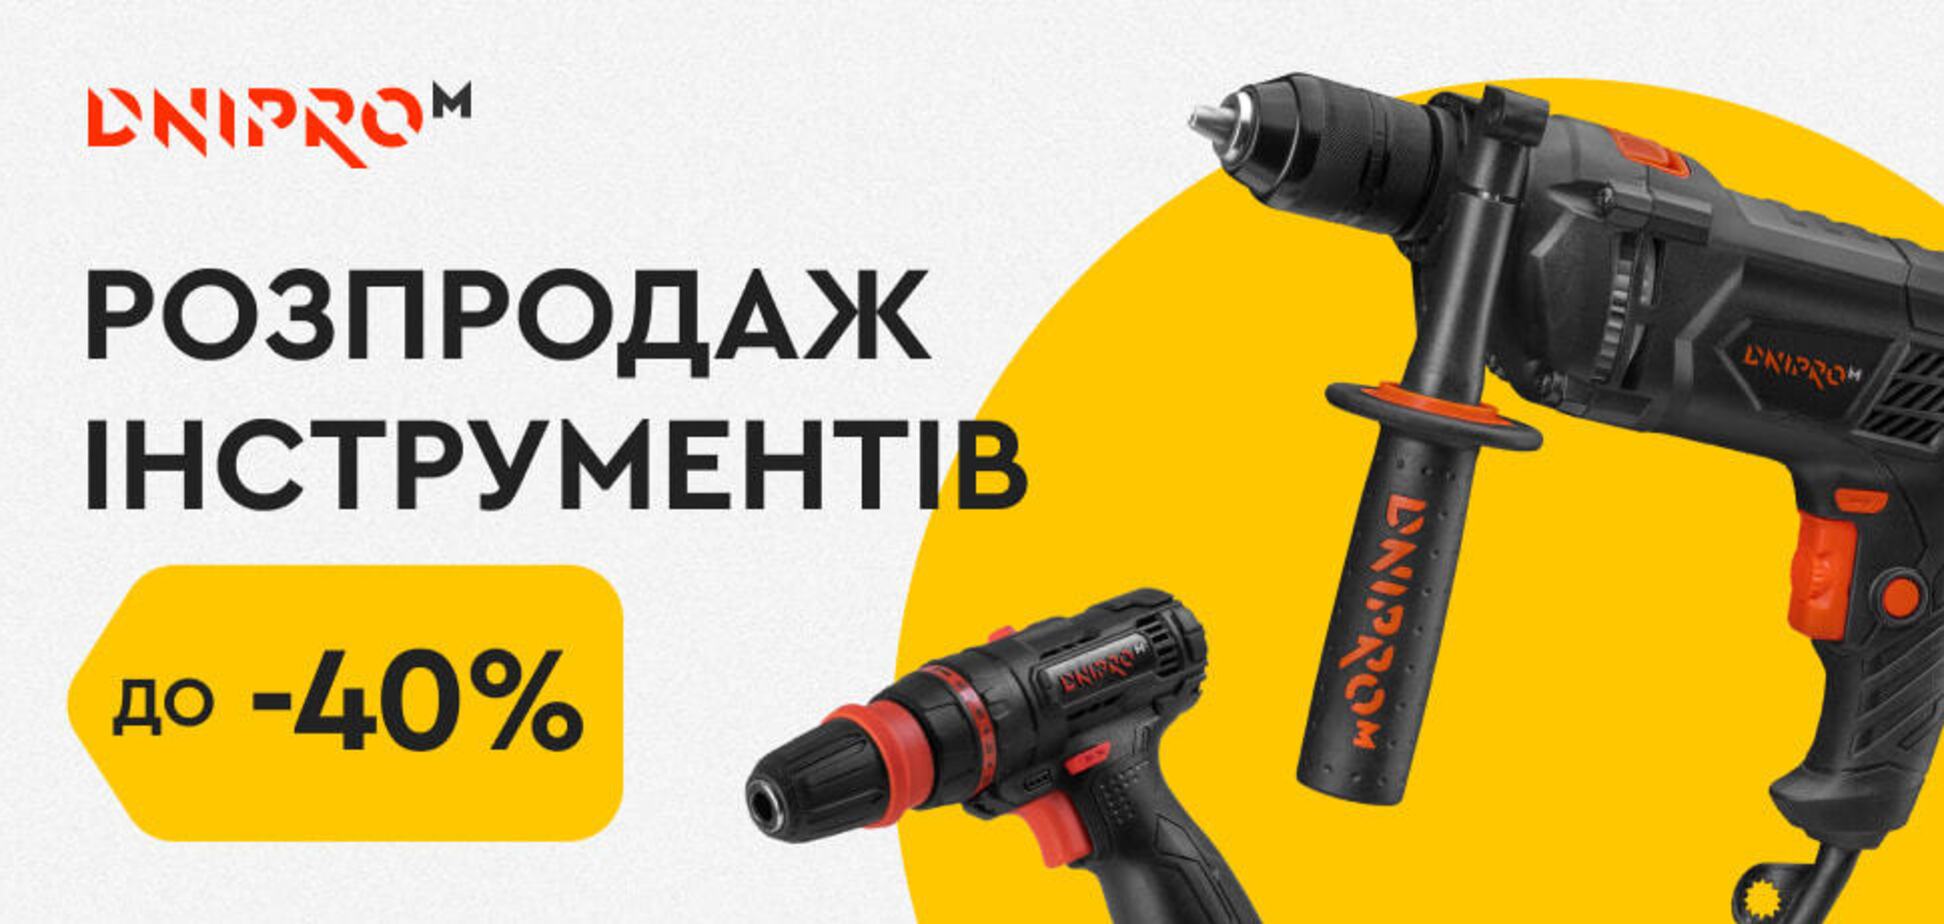 Dnipro-M анонсировала распродажу инструментов: что нужно успеть купить